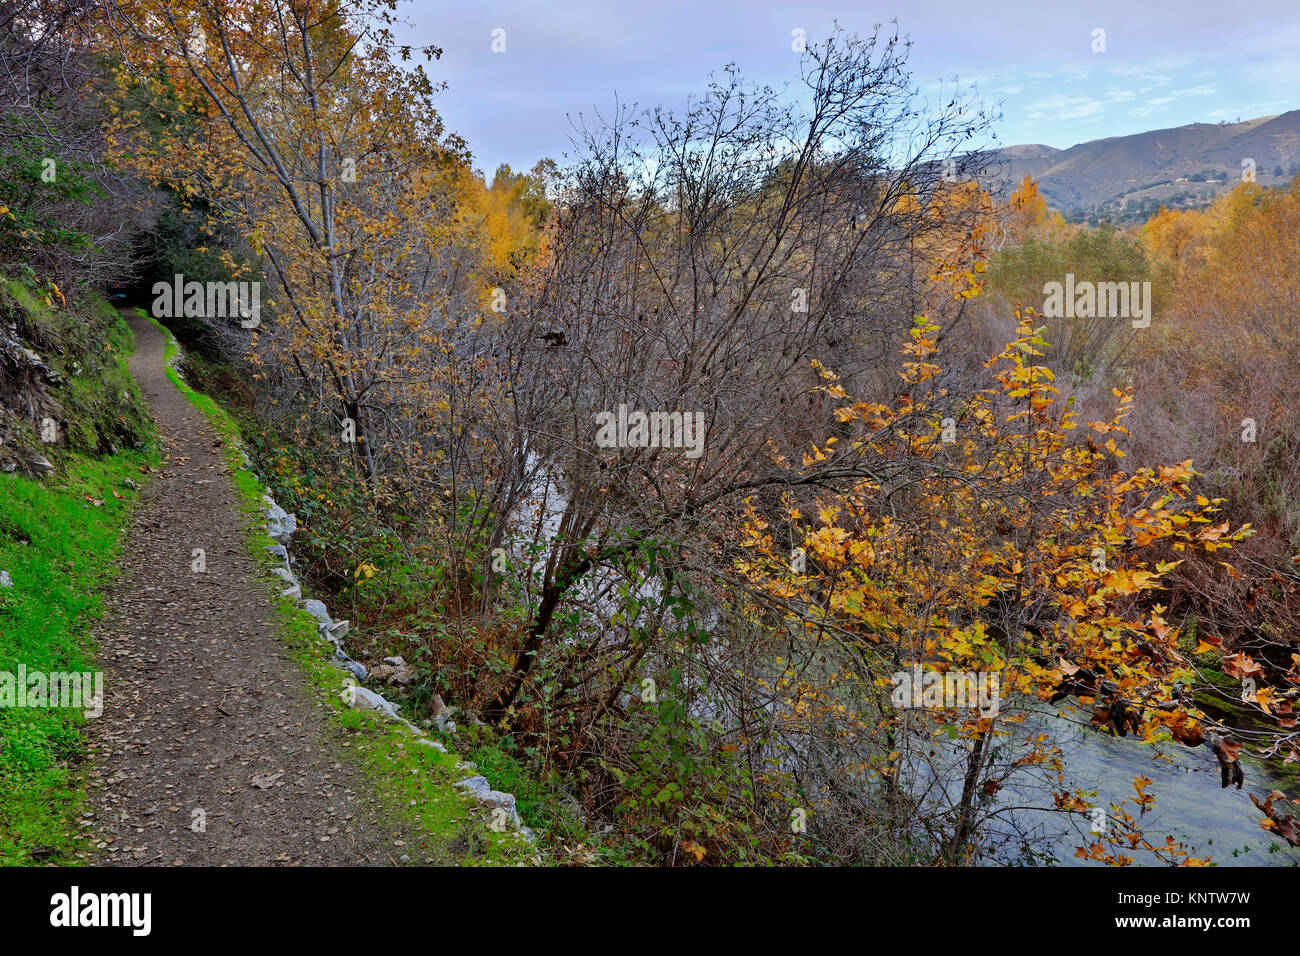 Der Carmel River getarnt im Herbst Laub - Carmel Valley, Kalifornien Stockfoto